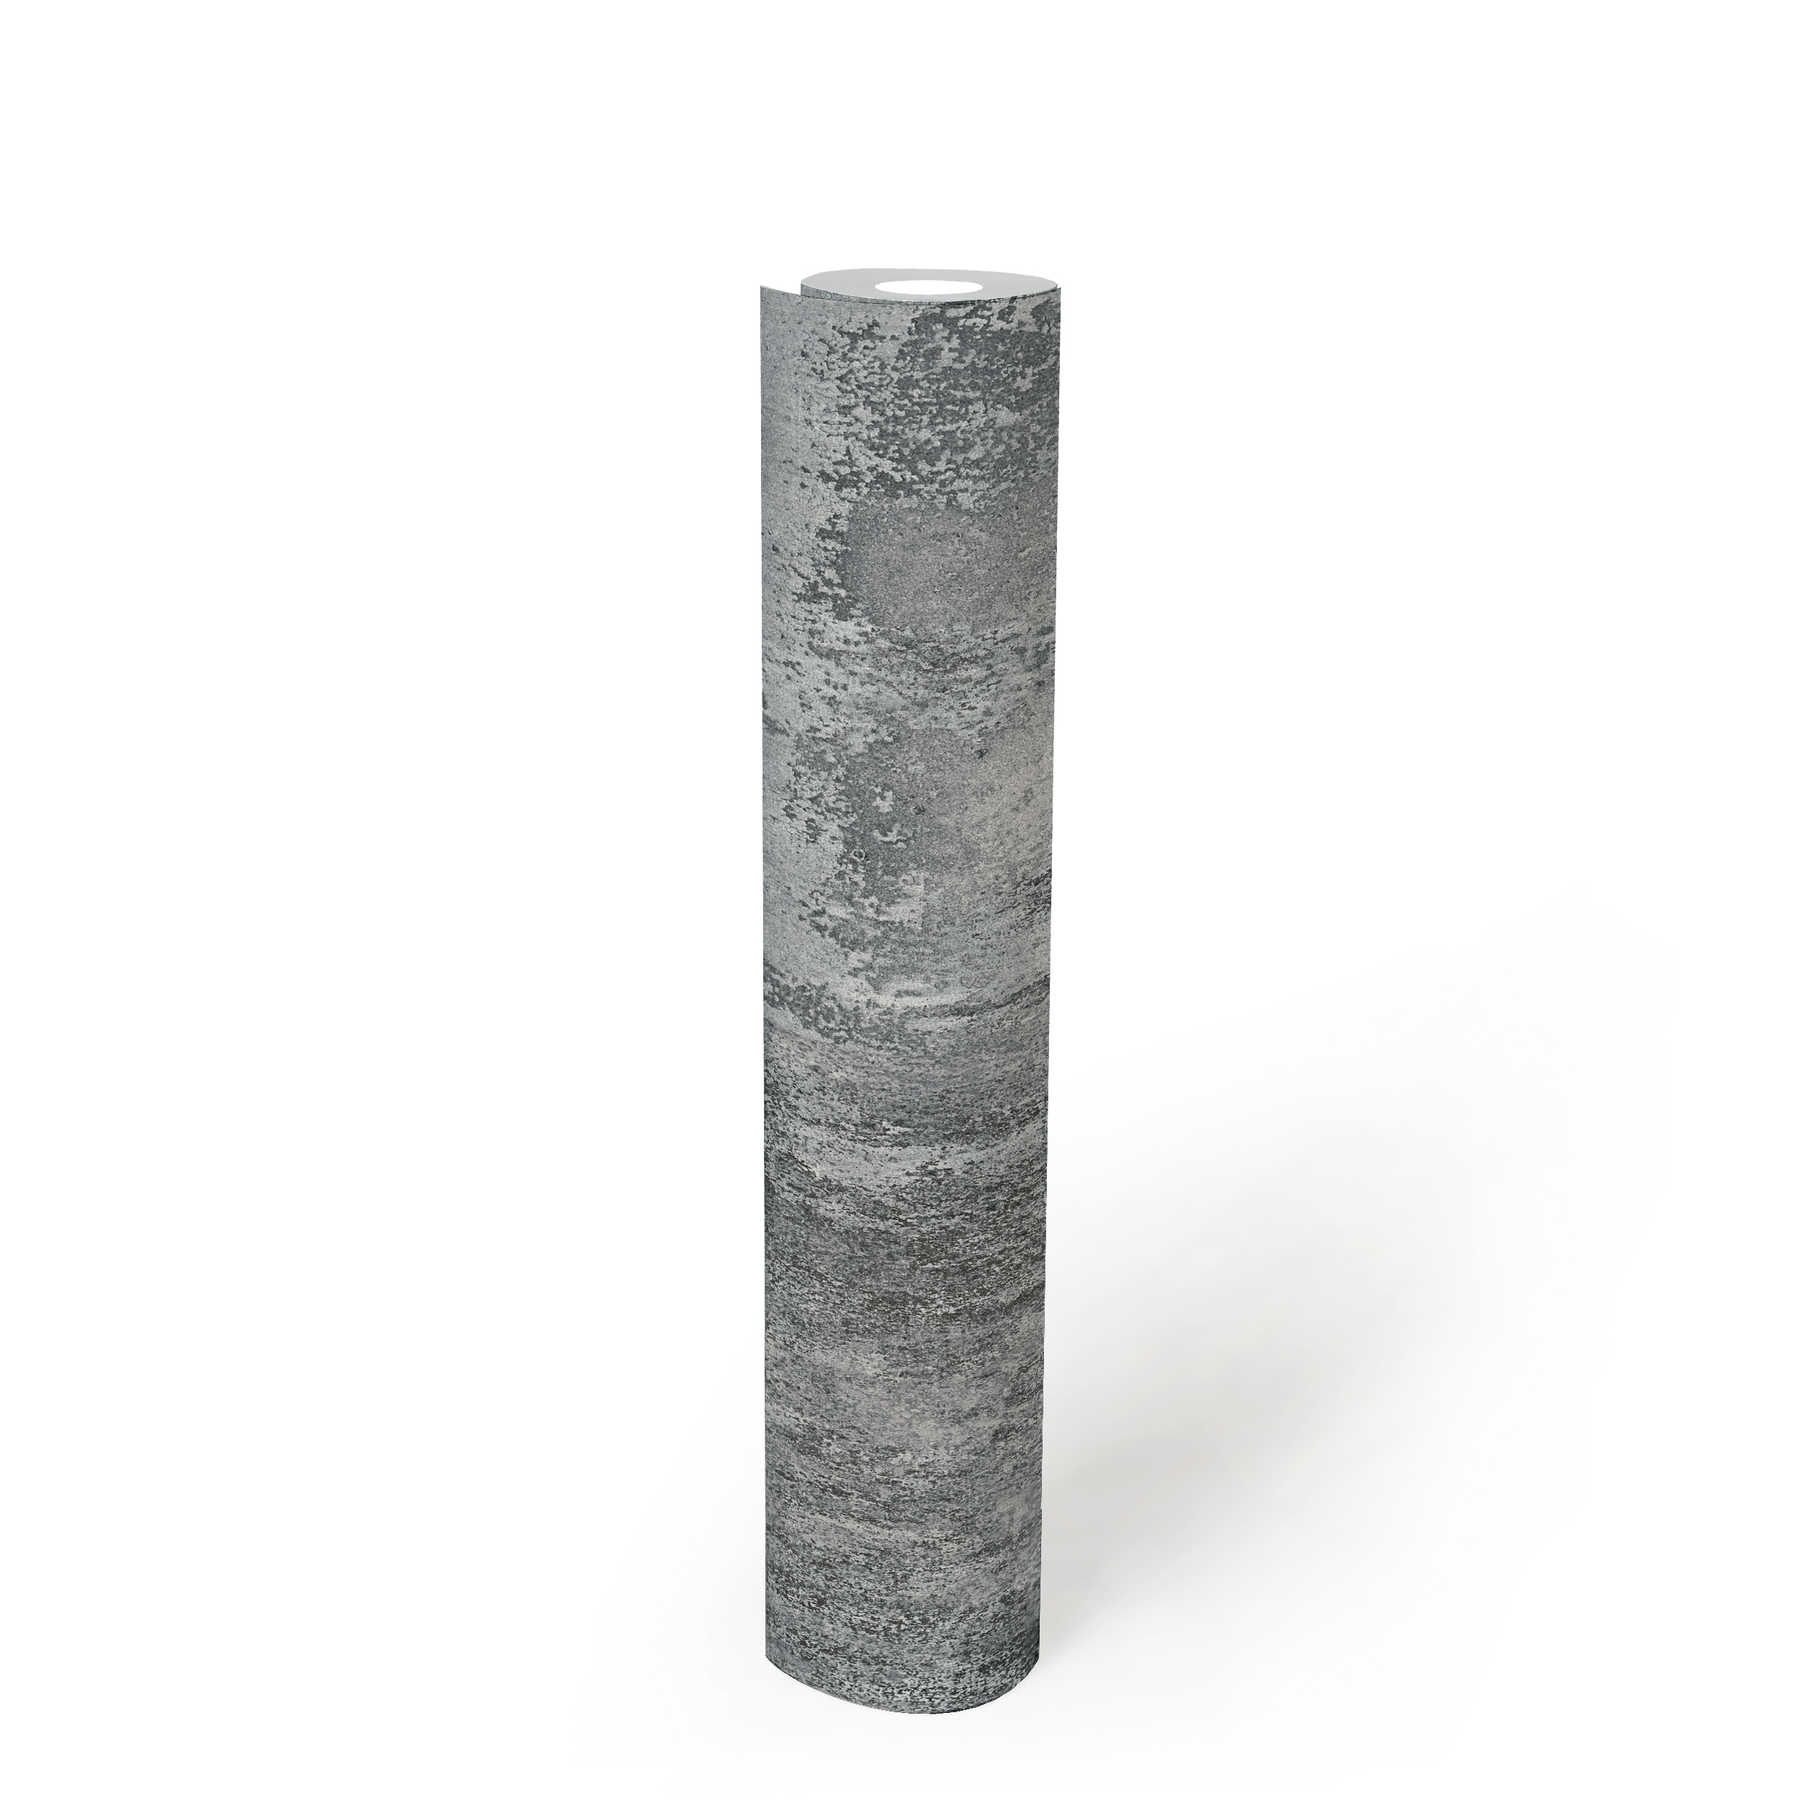             Carta da parati con aspetto metallico rustico e motivo grezzo - grigio, nero, argento
        